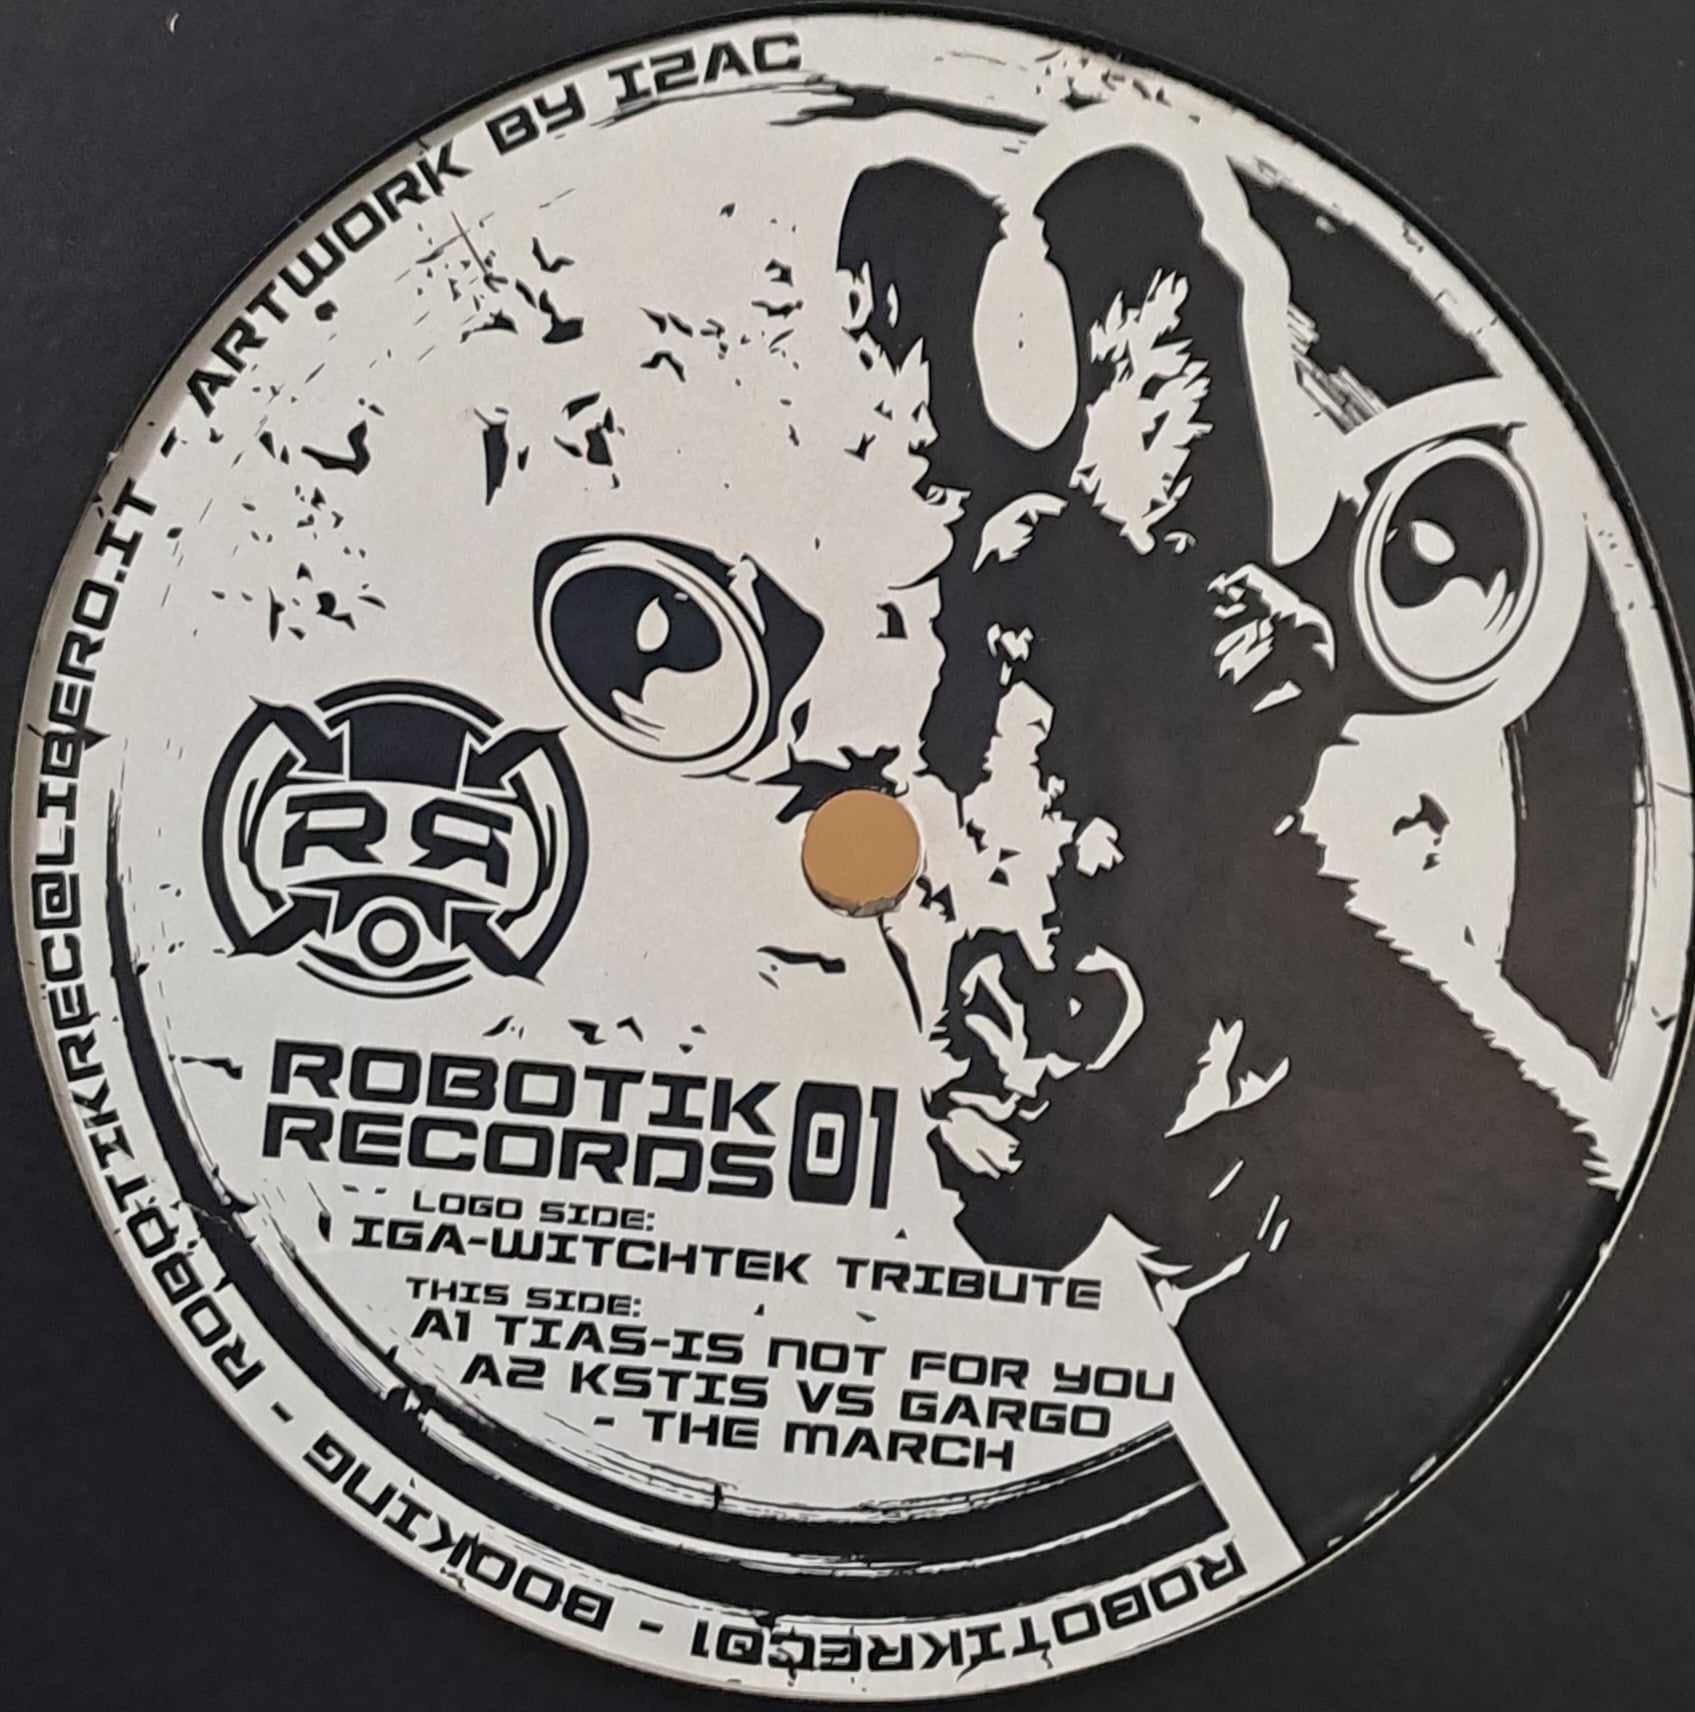 Robotik Records 01 - vinyle freetekno